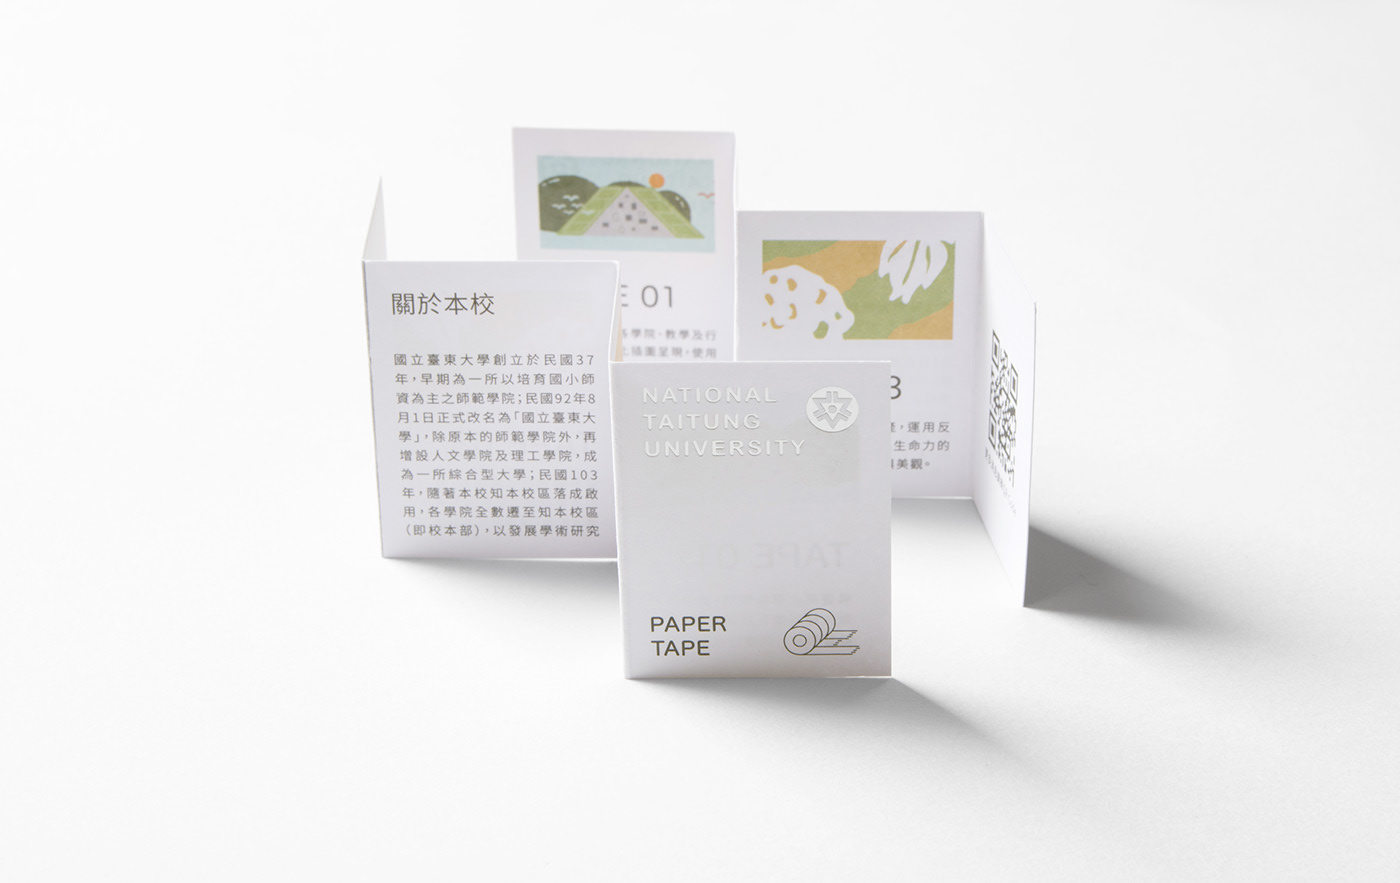 台东大学纪念纸胶带包装设计